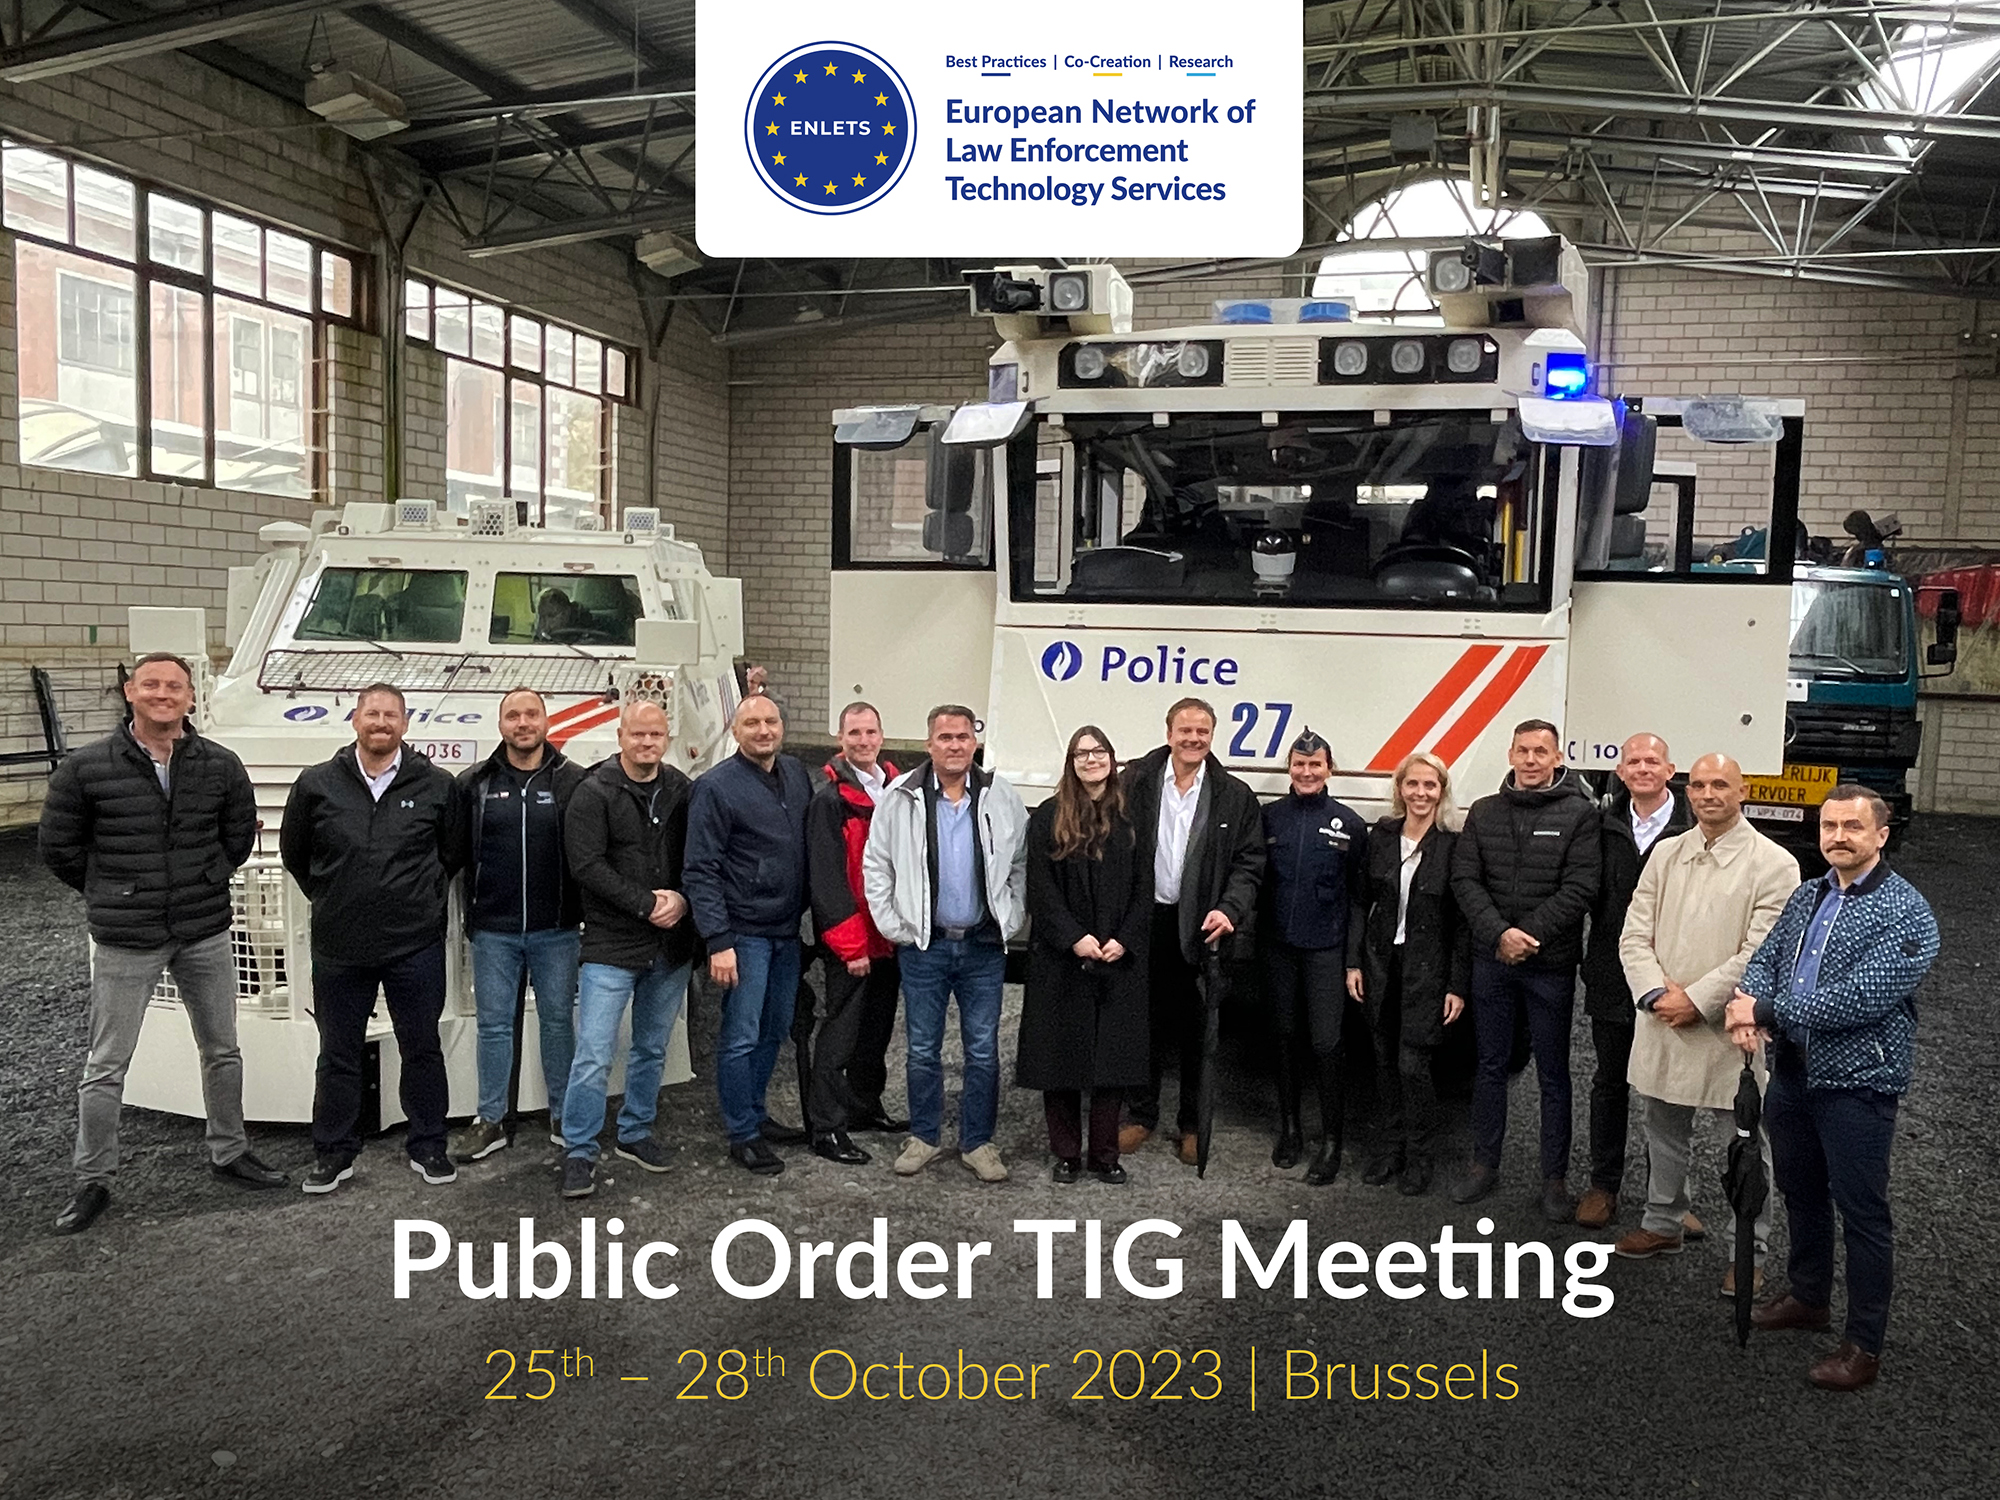 Public Order TIG Meeting in Brussels